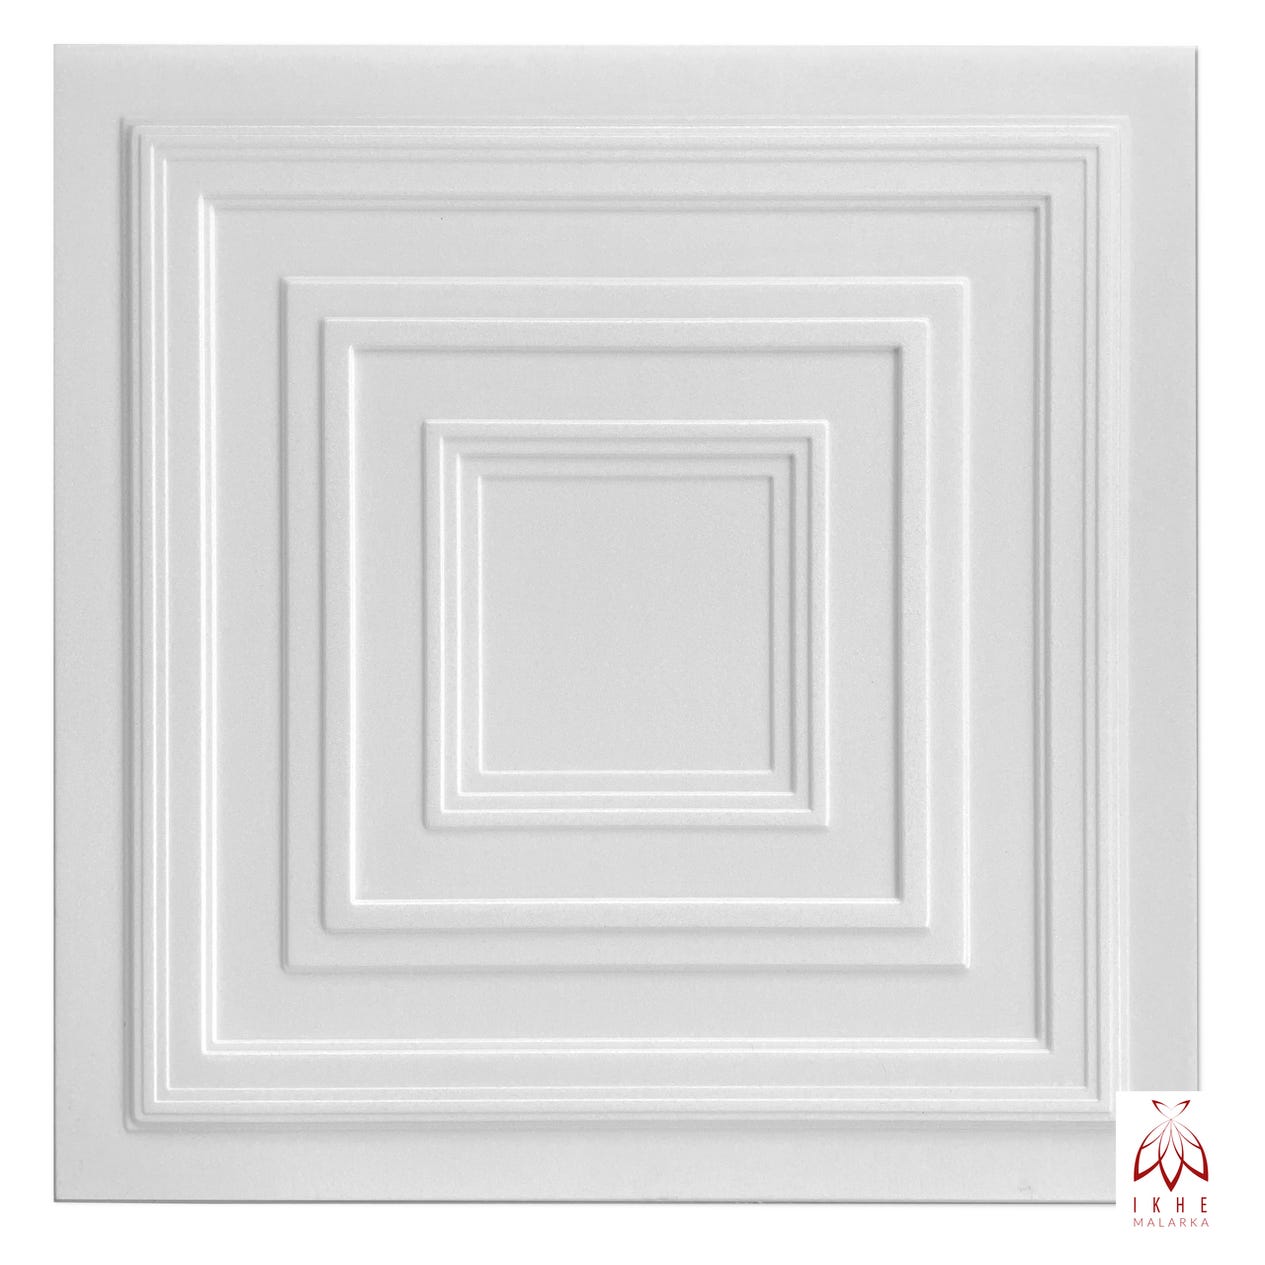 6m² / Pannelli parete 3D, rivestimento, pannelli soffitto, bianco,  MATERIALE POLISTIRENE, spessore 2 mm 24 pezzi - 0831